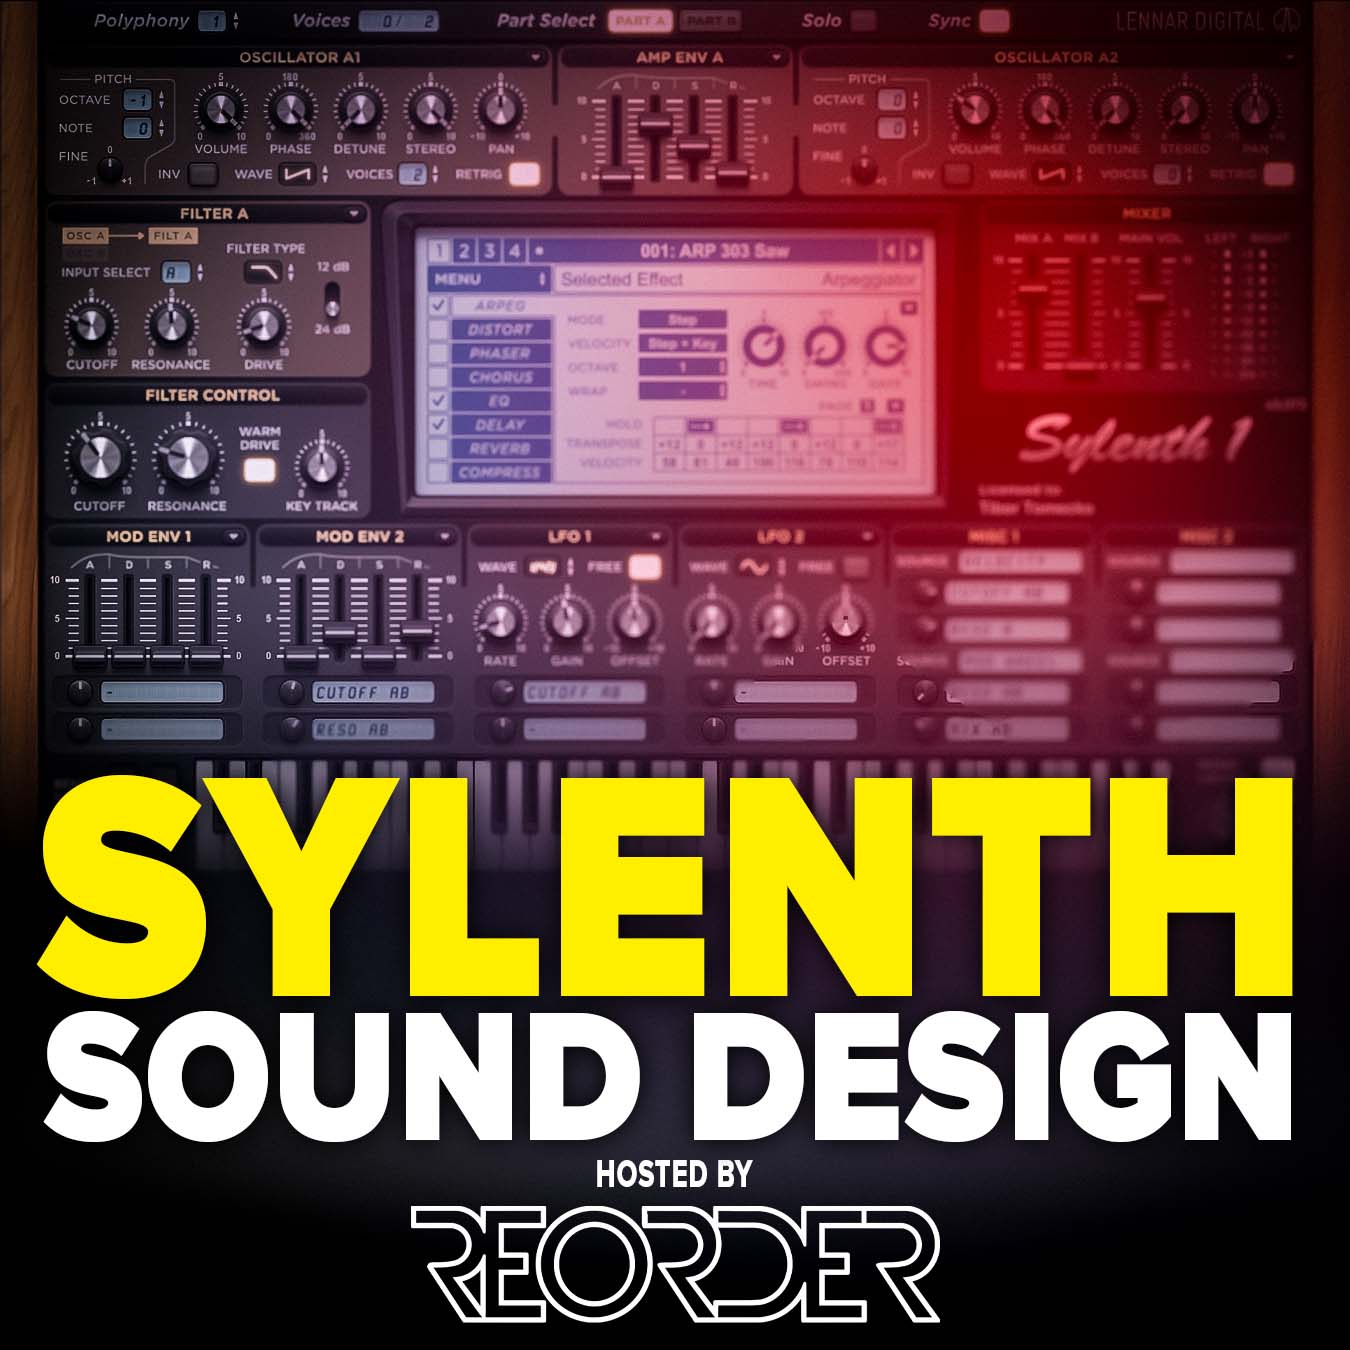 how to use sylenth plugin, sylenth sound design, sylenth presets, sylenth tutorial, masterclass with reorder